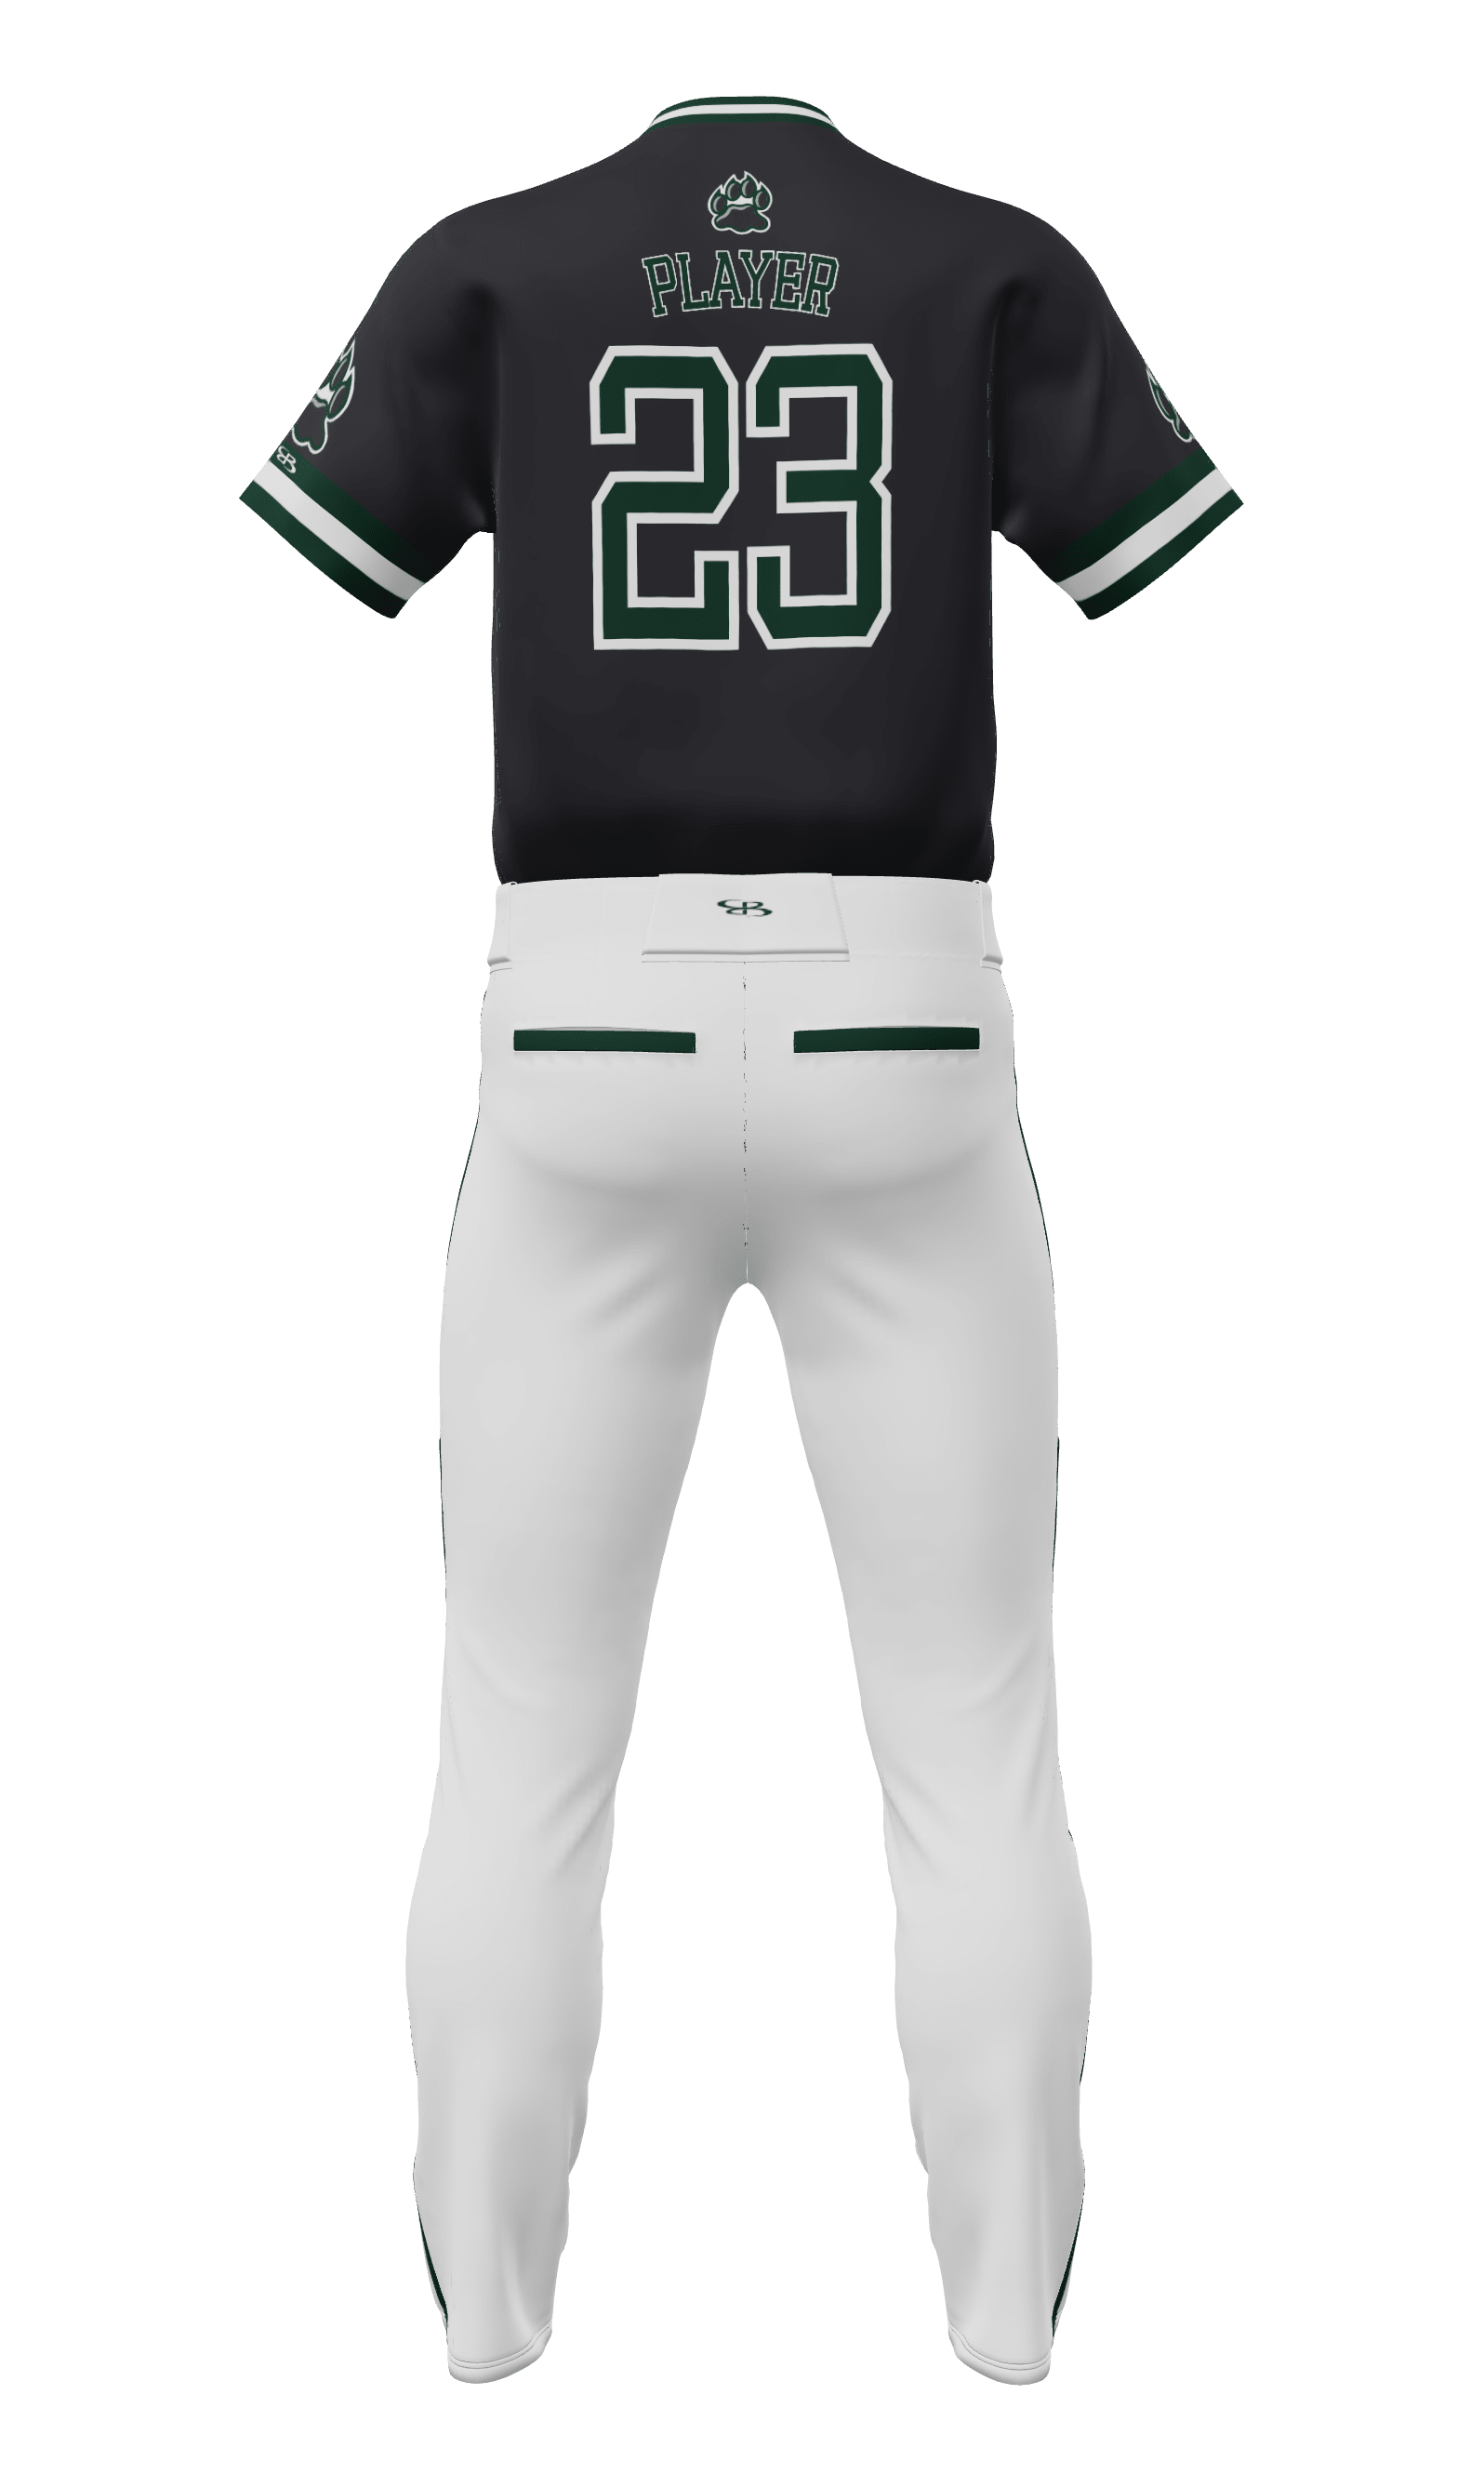 black baseball pants uniform